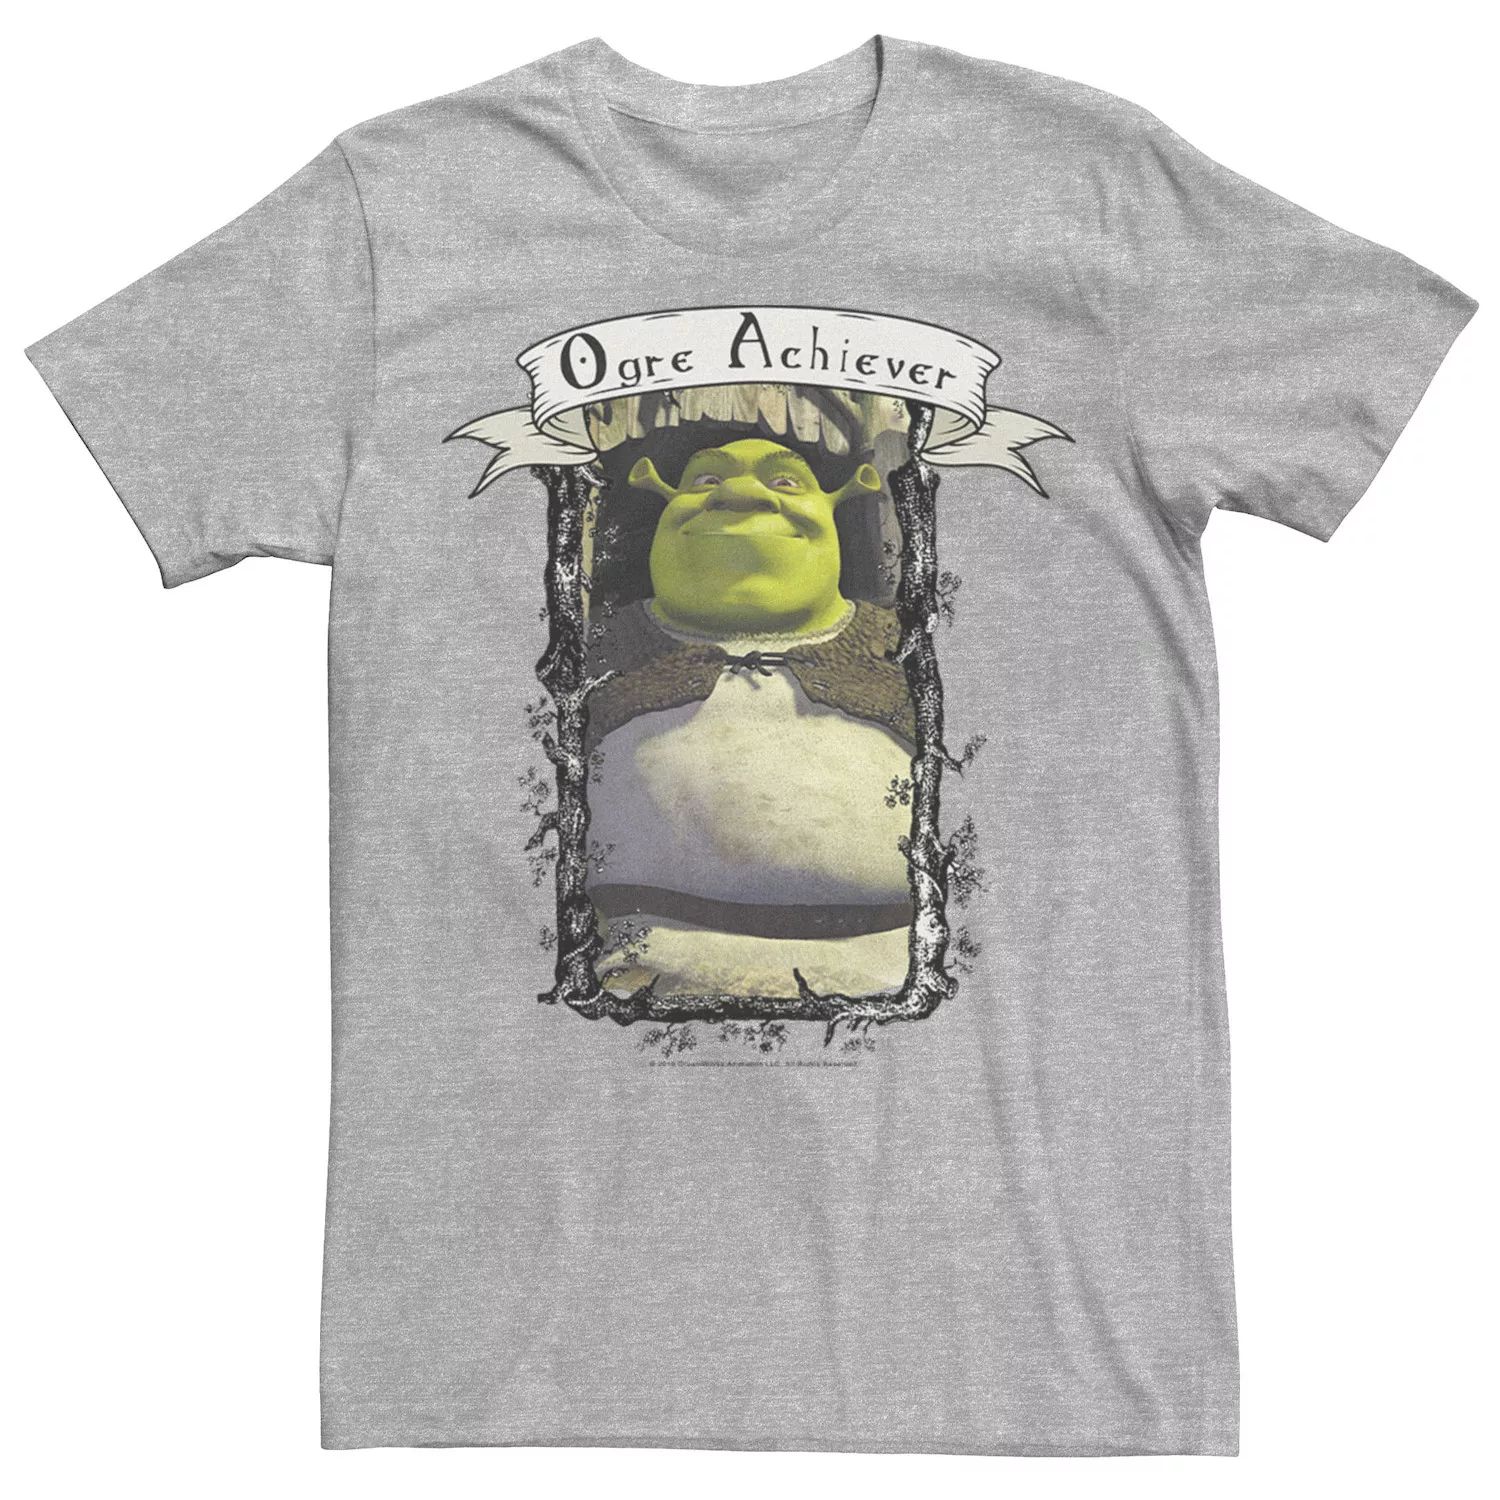 Мужская футболка с рисунком Shrek Ogre Achiever Award Licensed Character